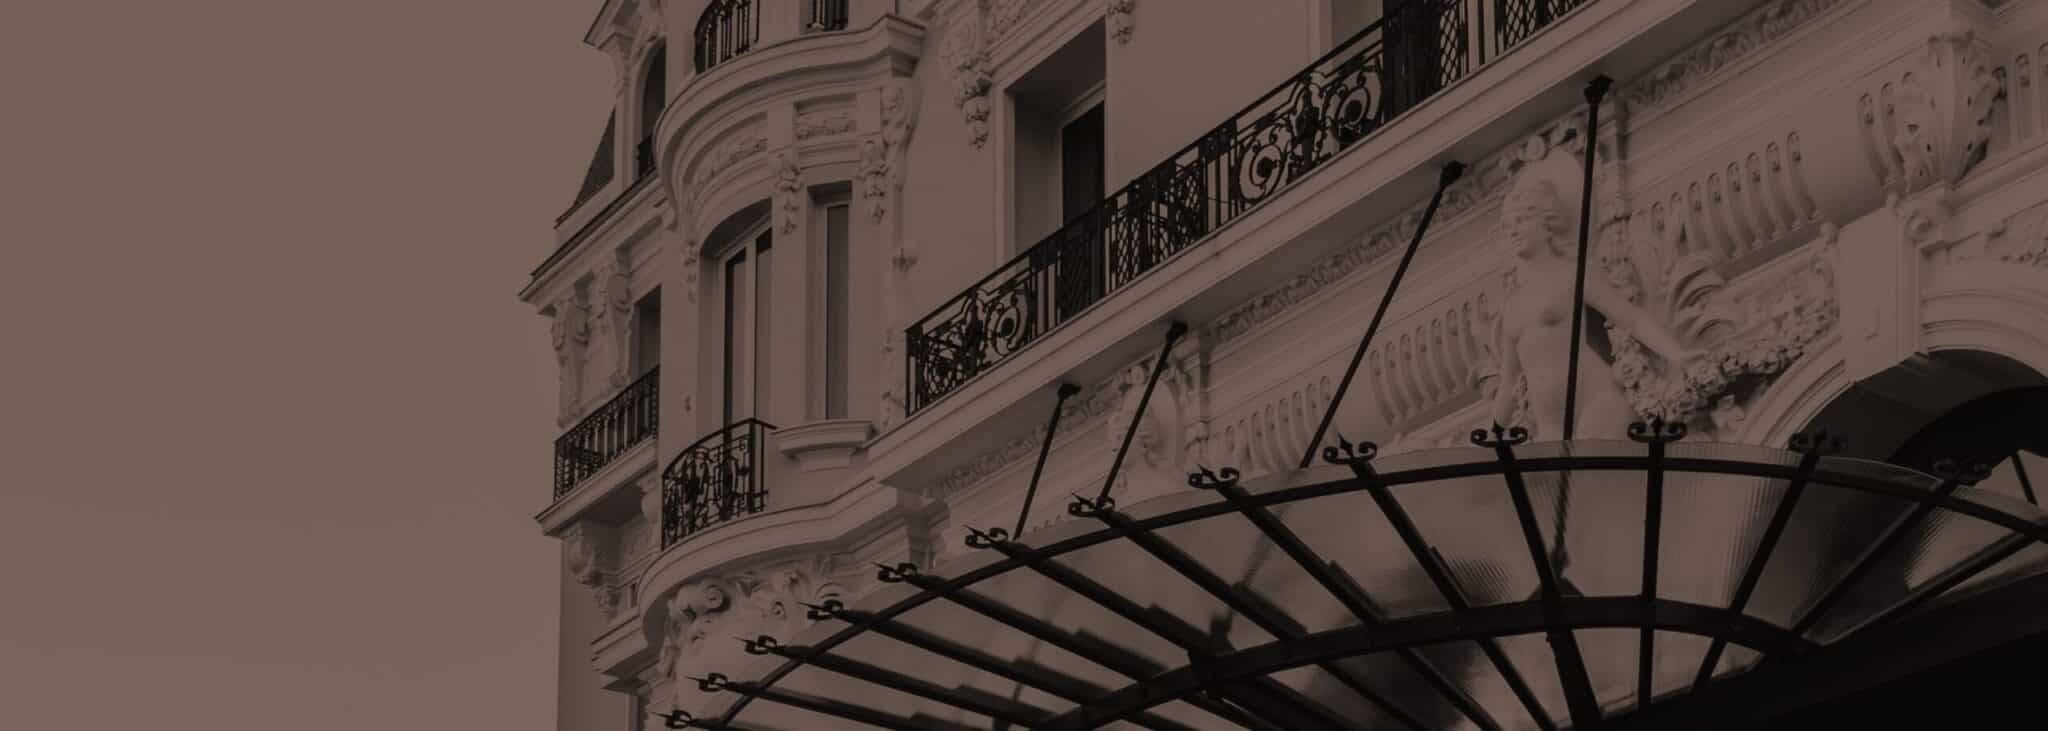 Brown picture of Hotel de Paris Monte Carlo